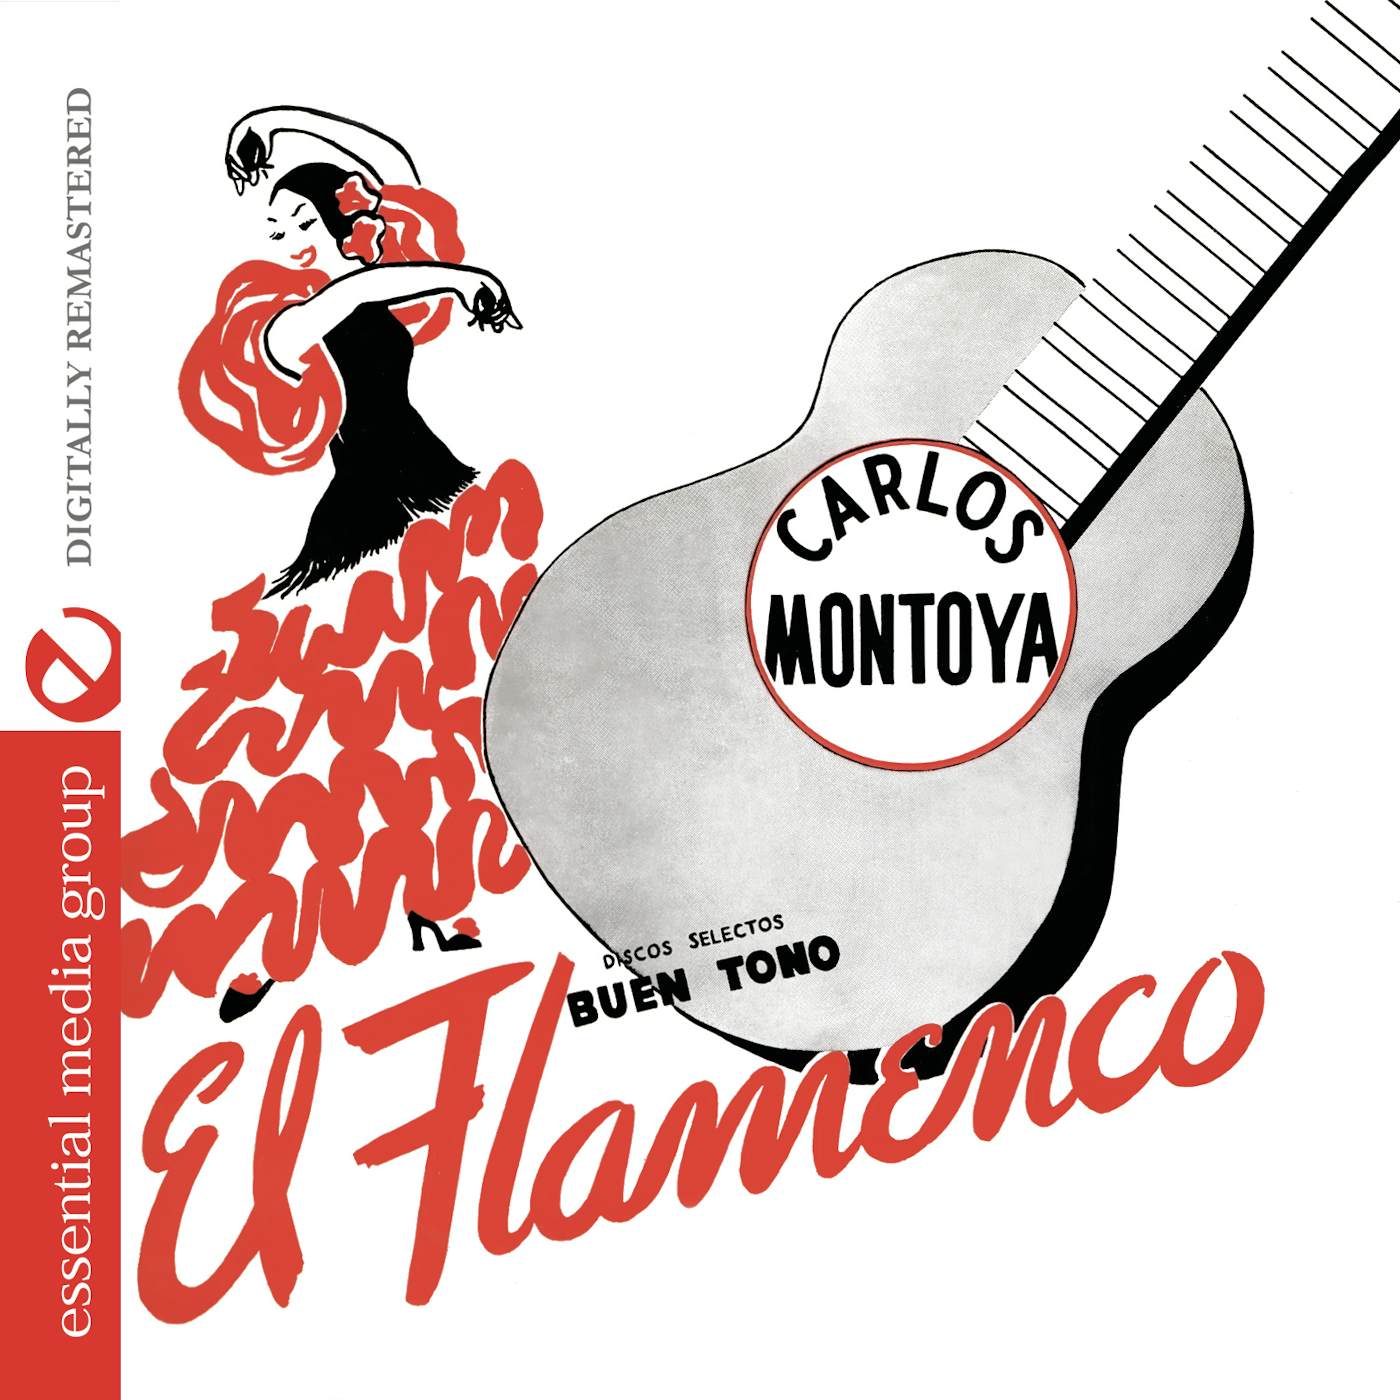 Carlos Montoya EL FLAMENCO CD